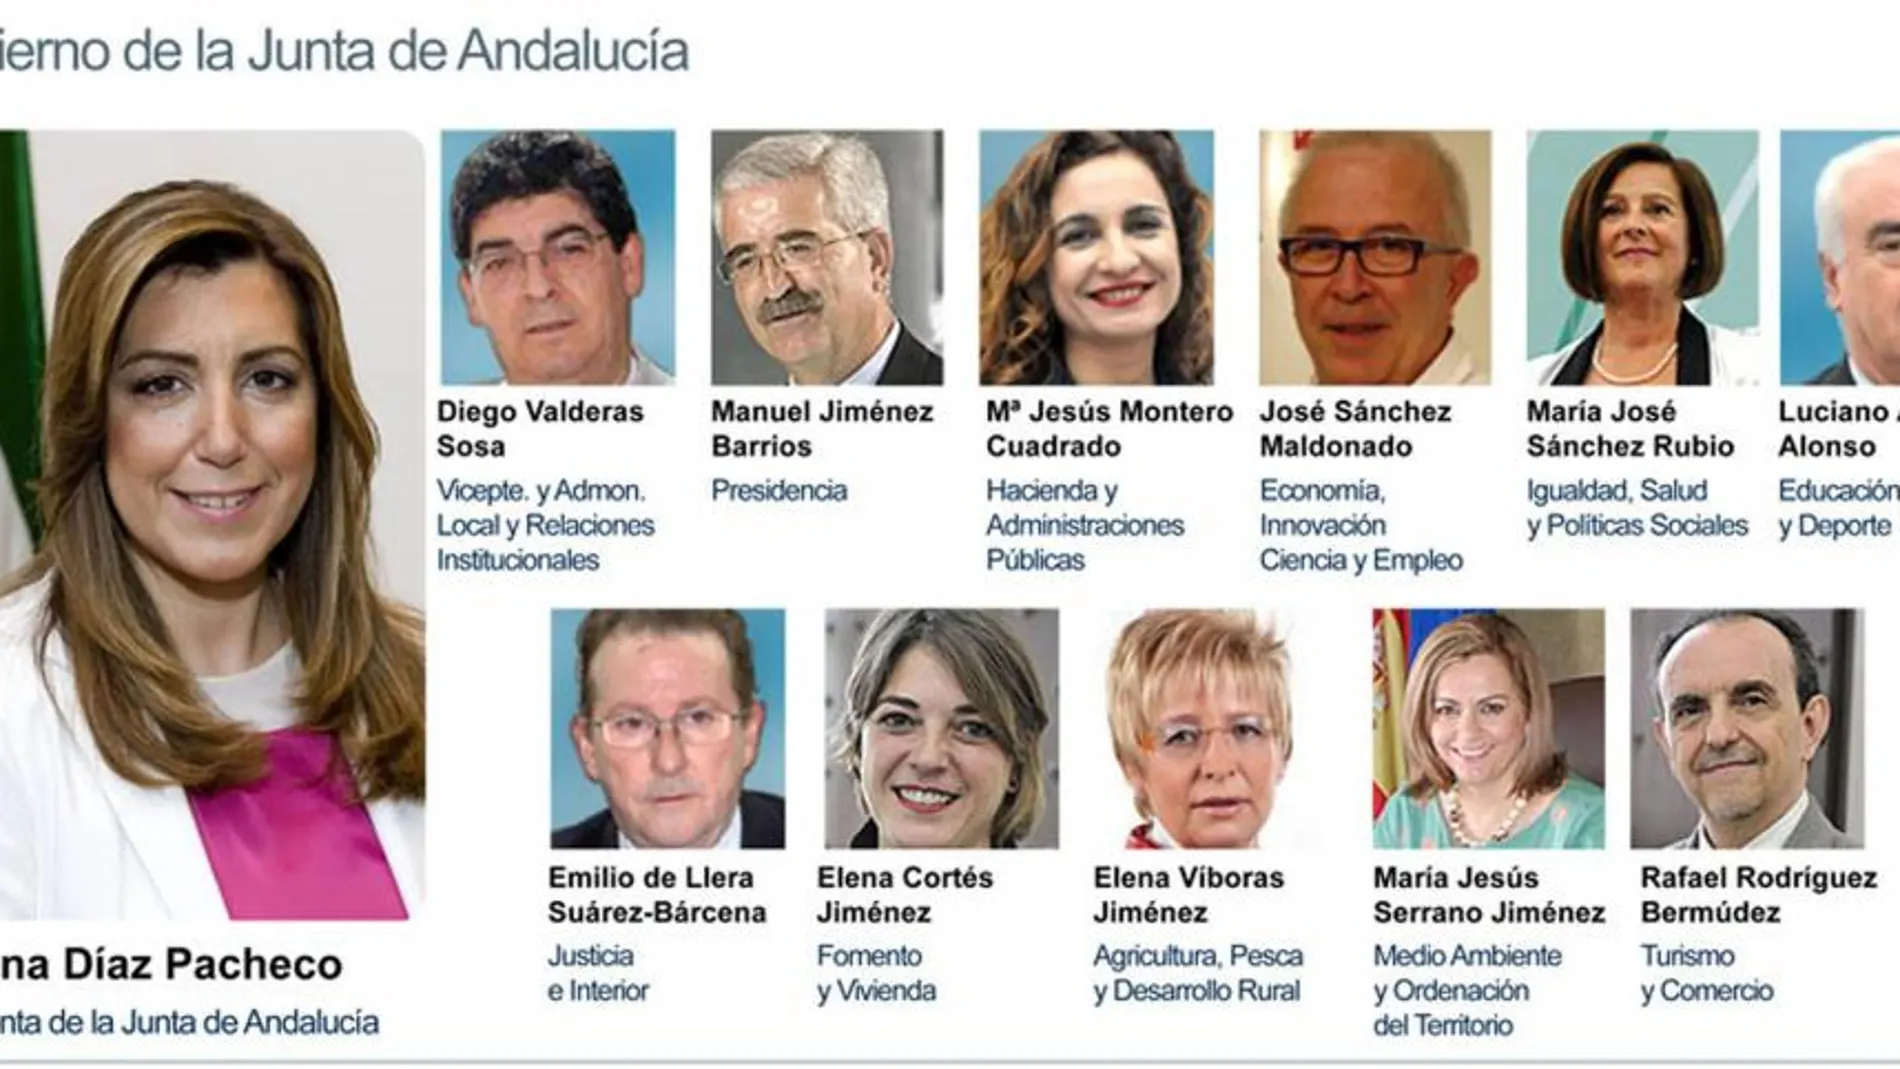 Combo de fotografías facilitado por la Junta de Andalucía del nuevo Gobierno autonómico, presidido por Susana Díaz Pacheco